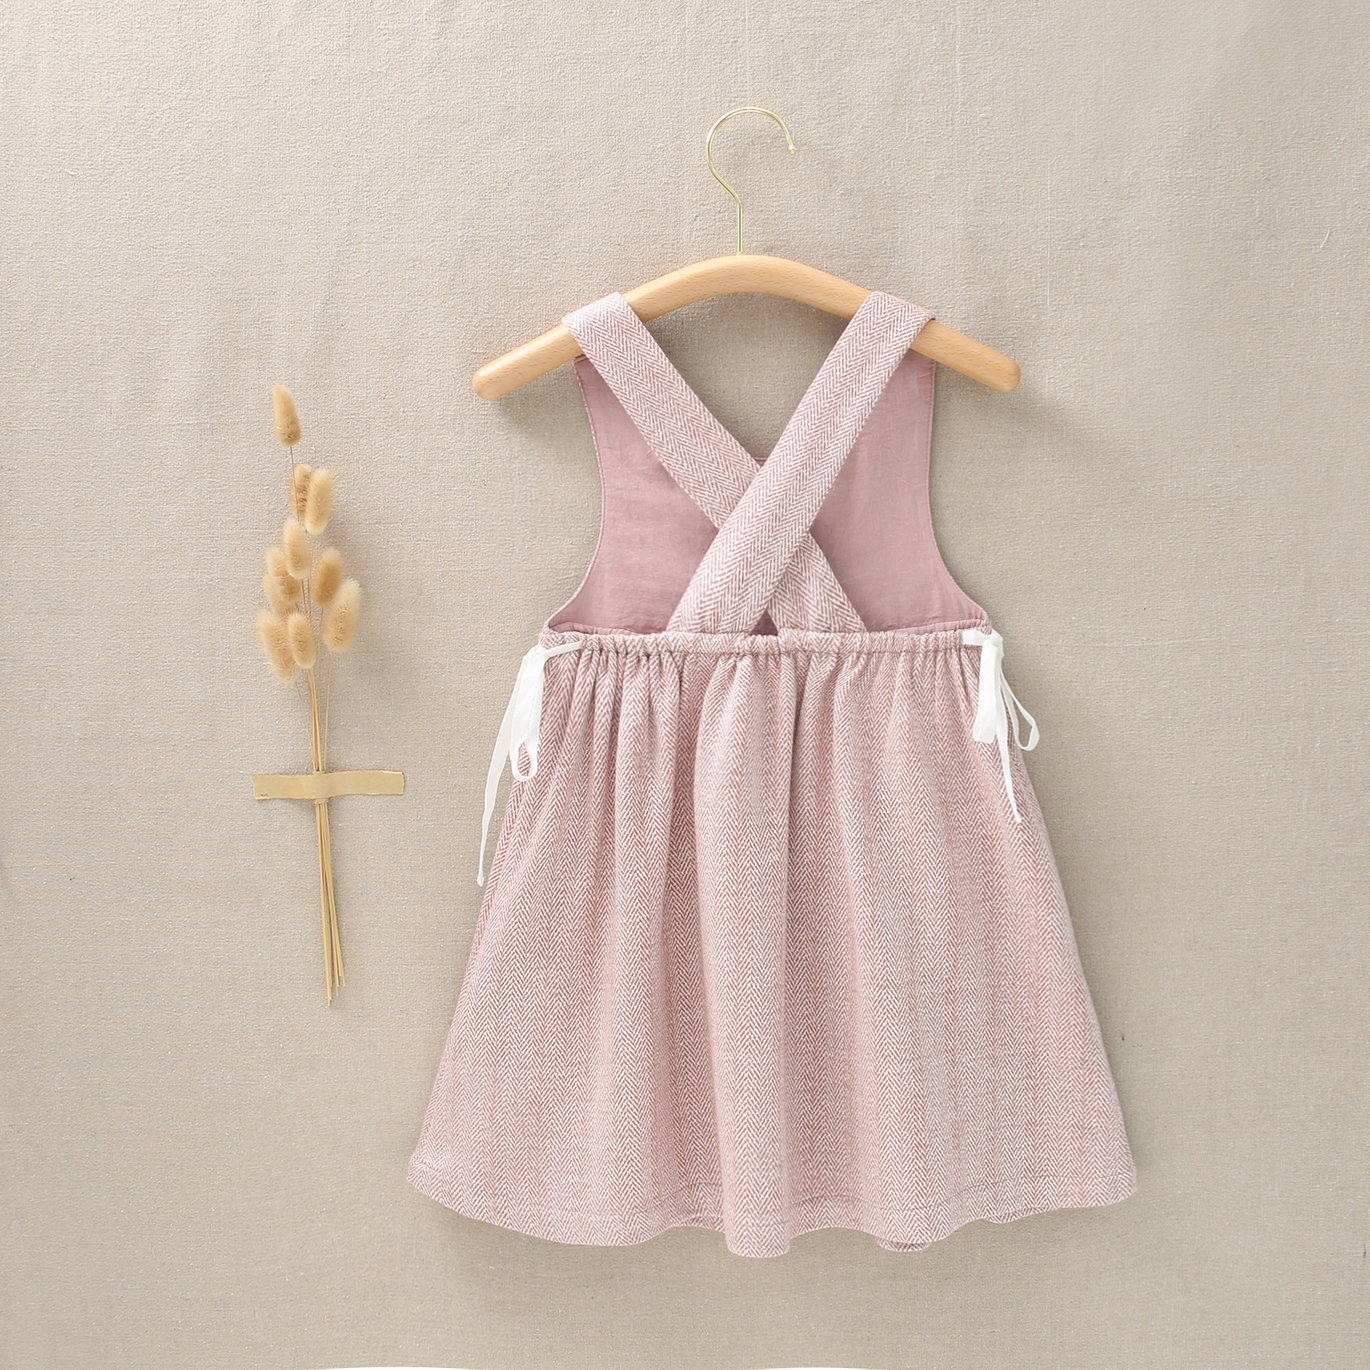 Imagen de Pichi de niña con cinta de herringbone al contraste de tejido de espiga rosa